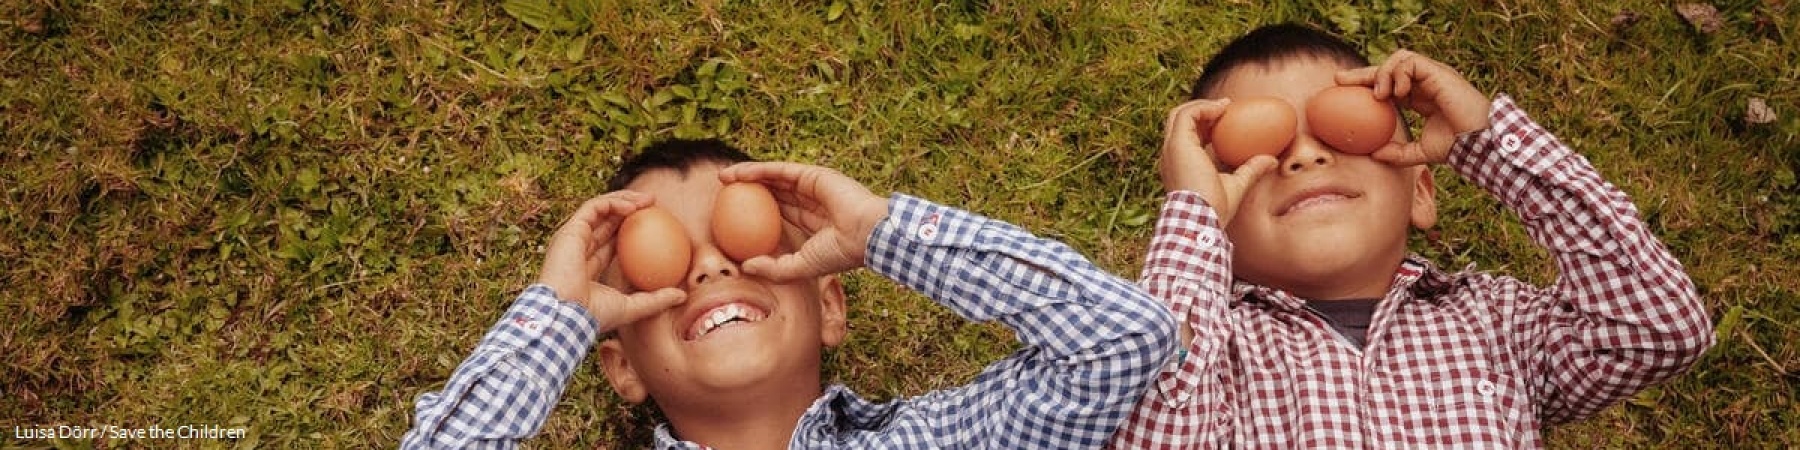 bambini sorridenti su un prato con uova di gallina sopra gli occhi 